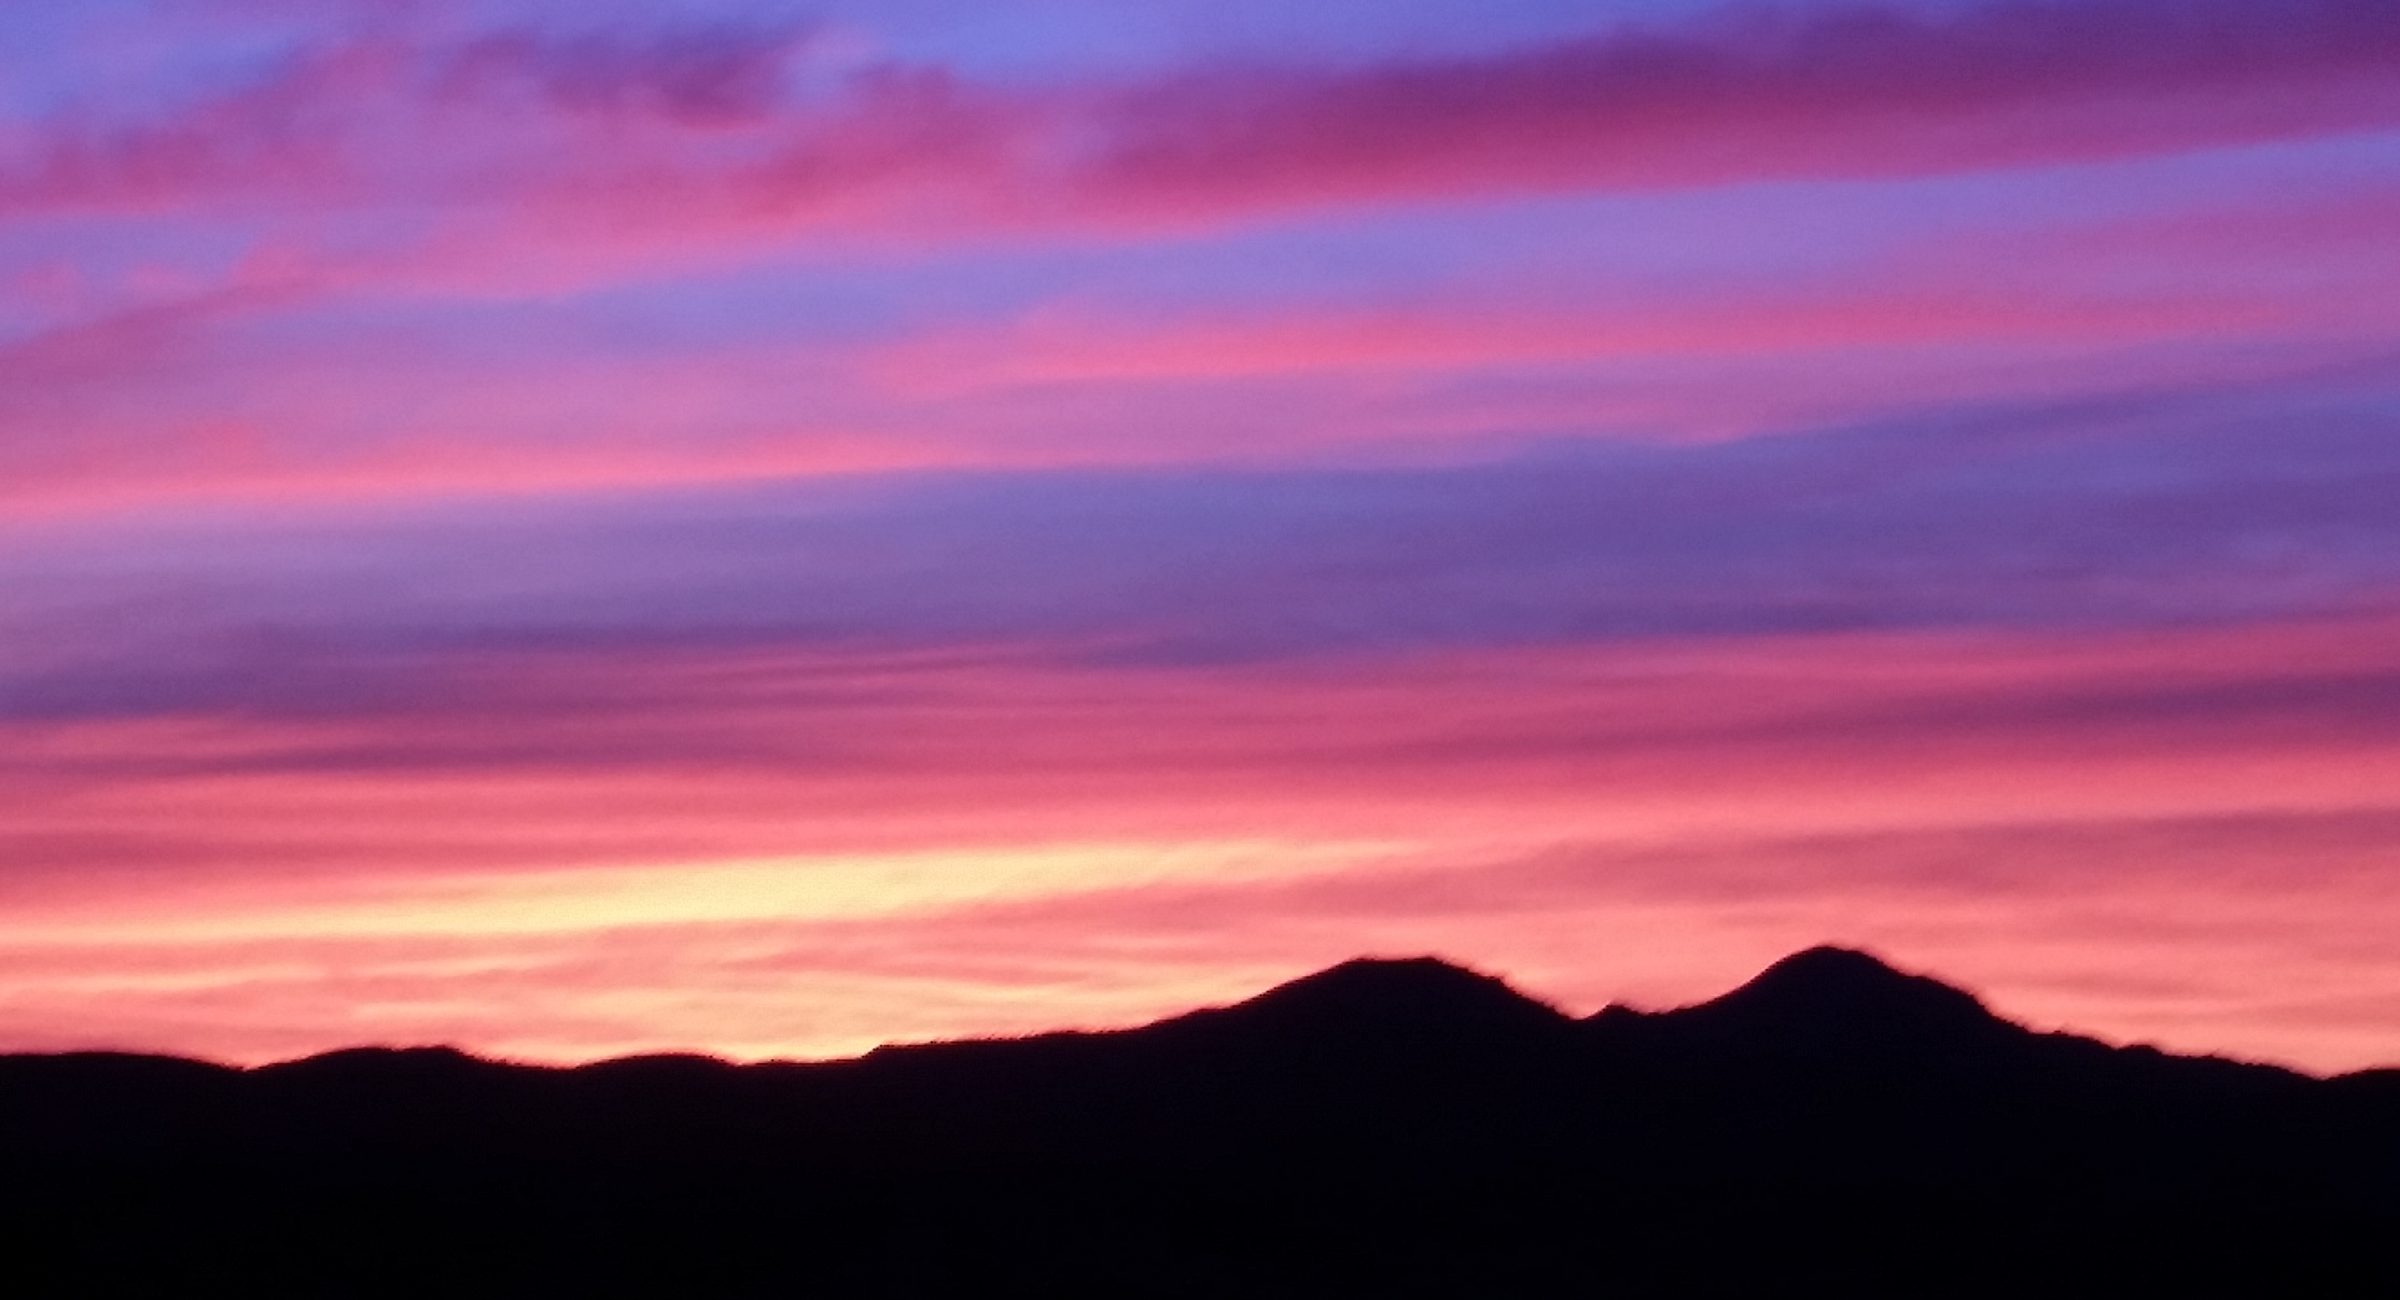 Prescott Sunset